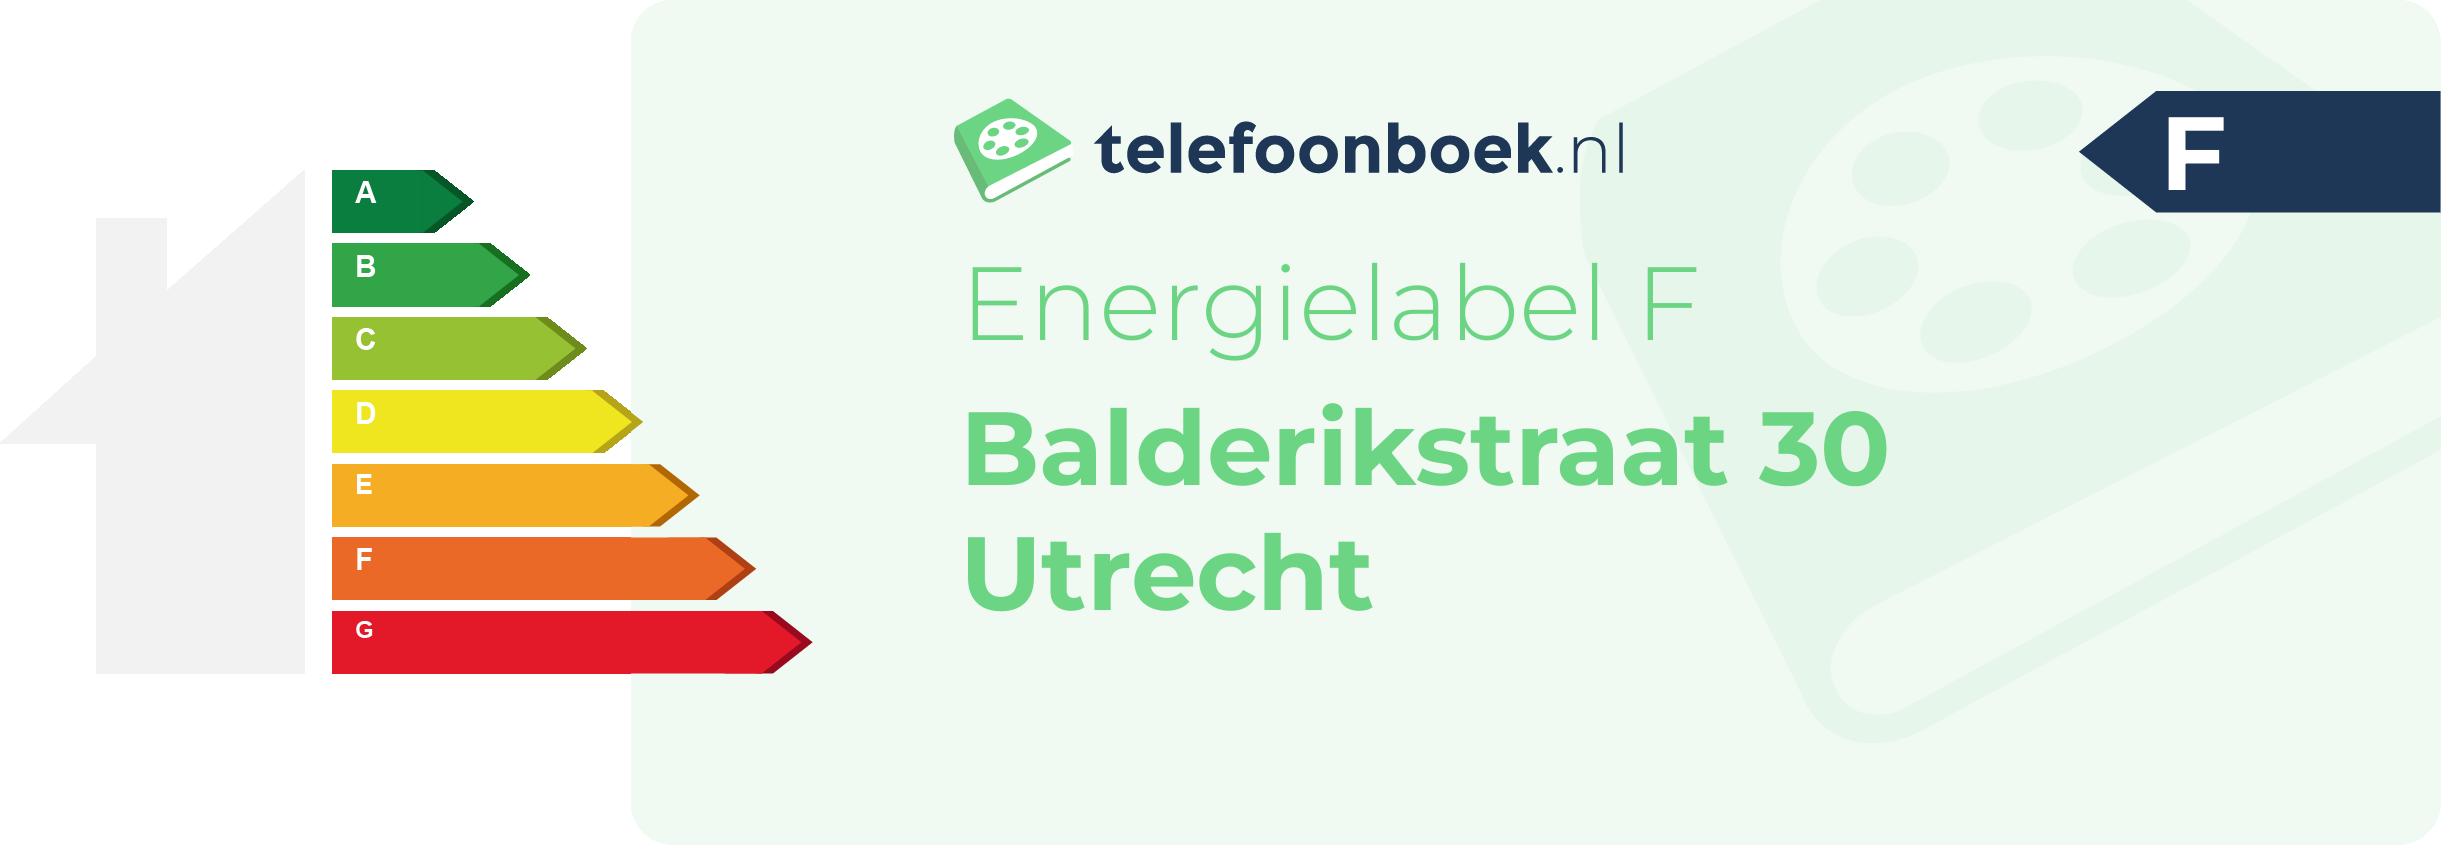 Energielabel Balderikstraat 30 Utrecht